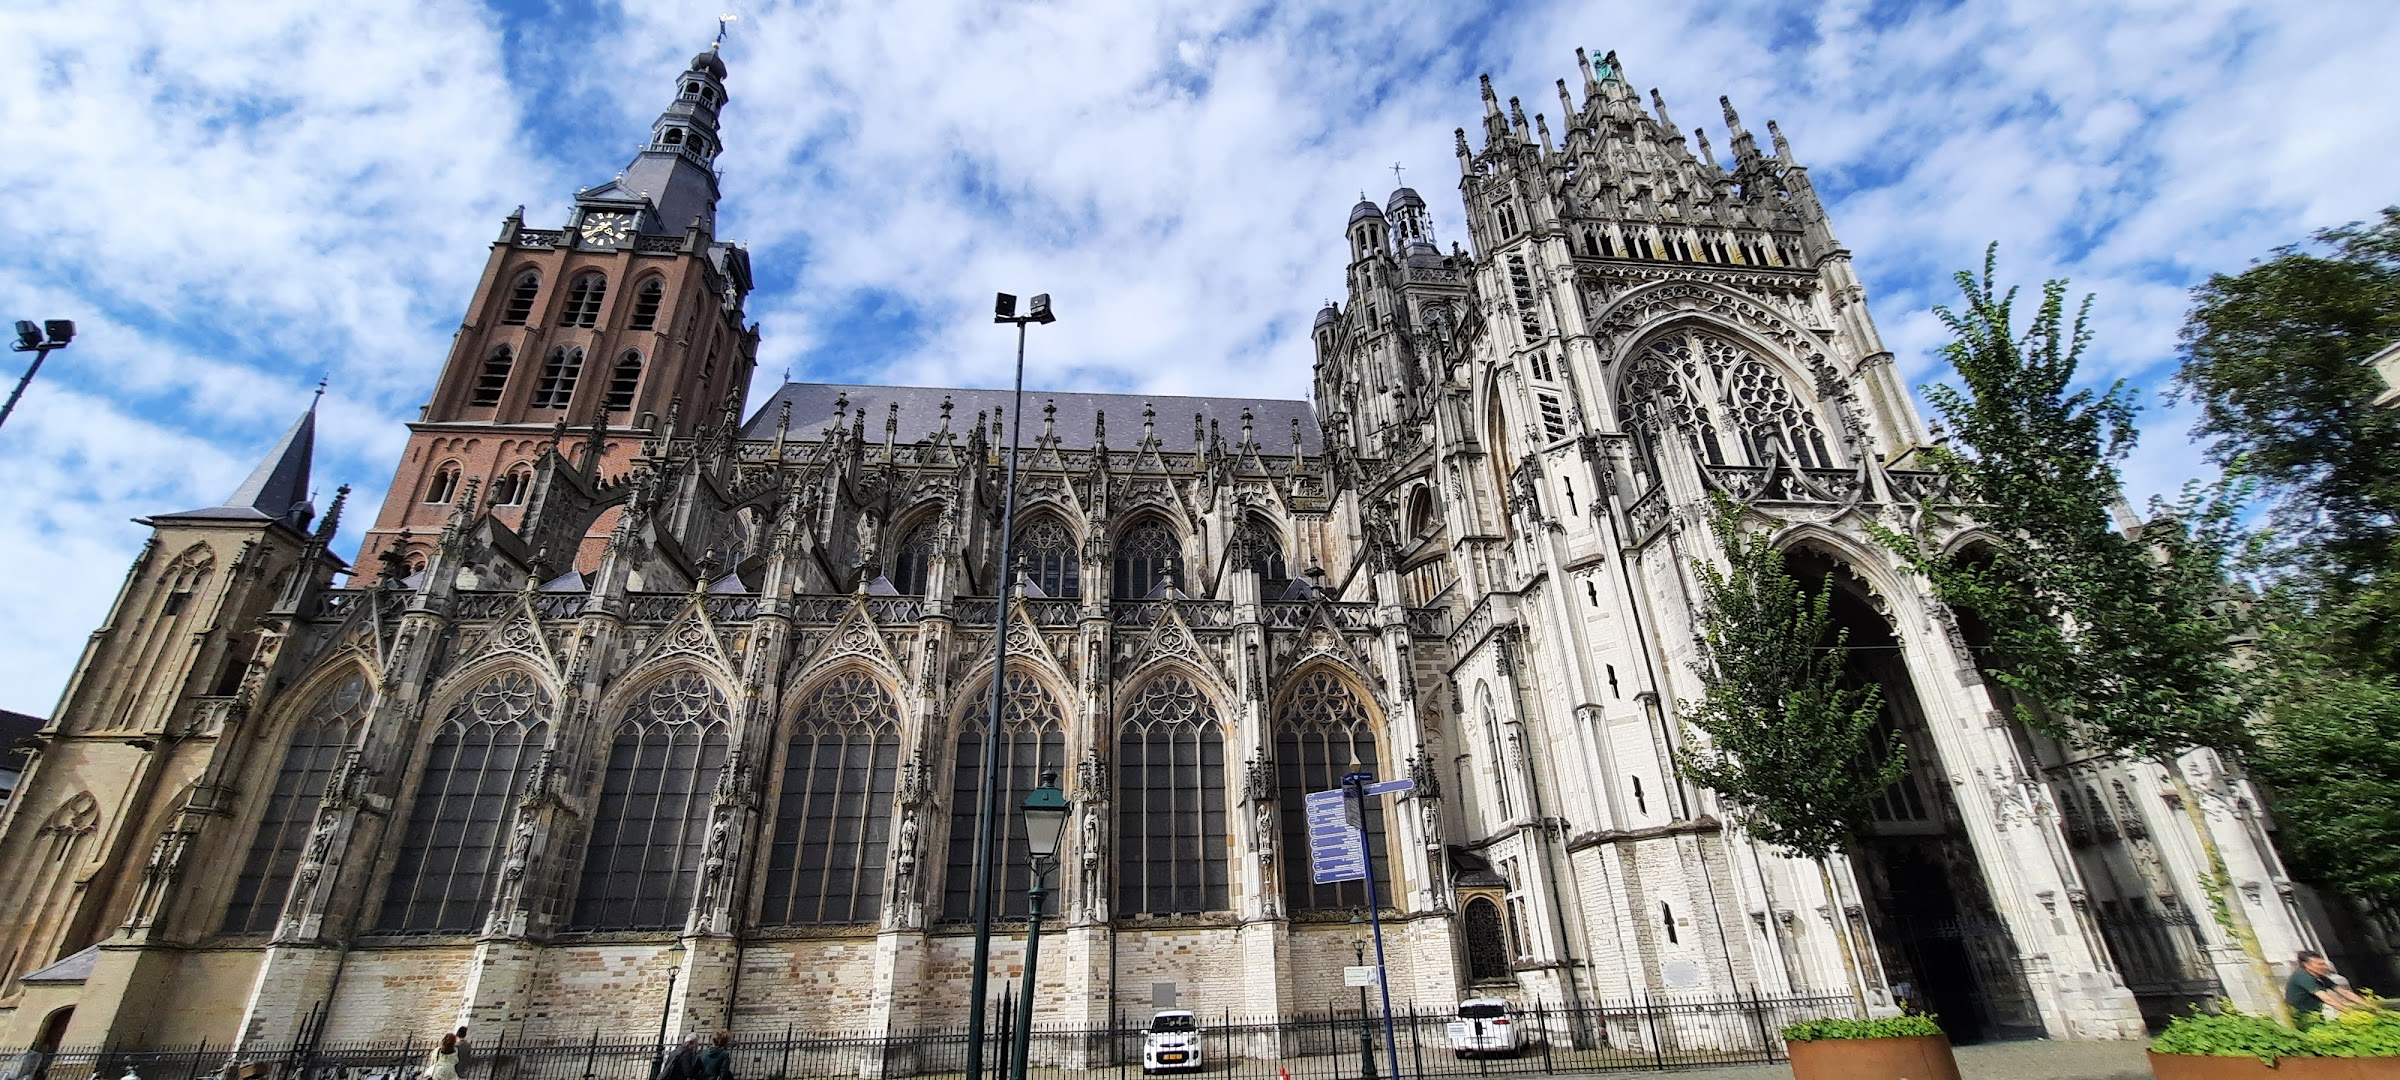 La basilique-cathédrale Saint-Jean de Bois-le-Duc, un chef-d'oeuvre de l'architecture gothique brabançonne aux Pays-Bas. Photo  ©. Daniel Desjardins